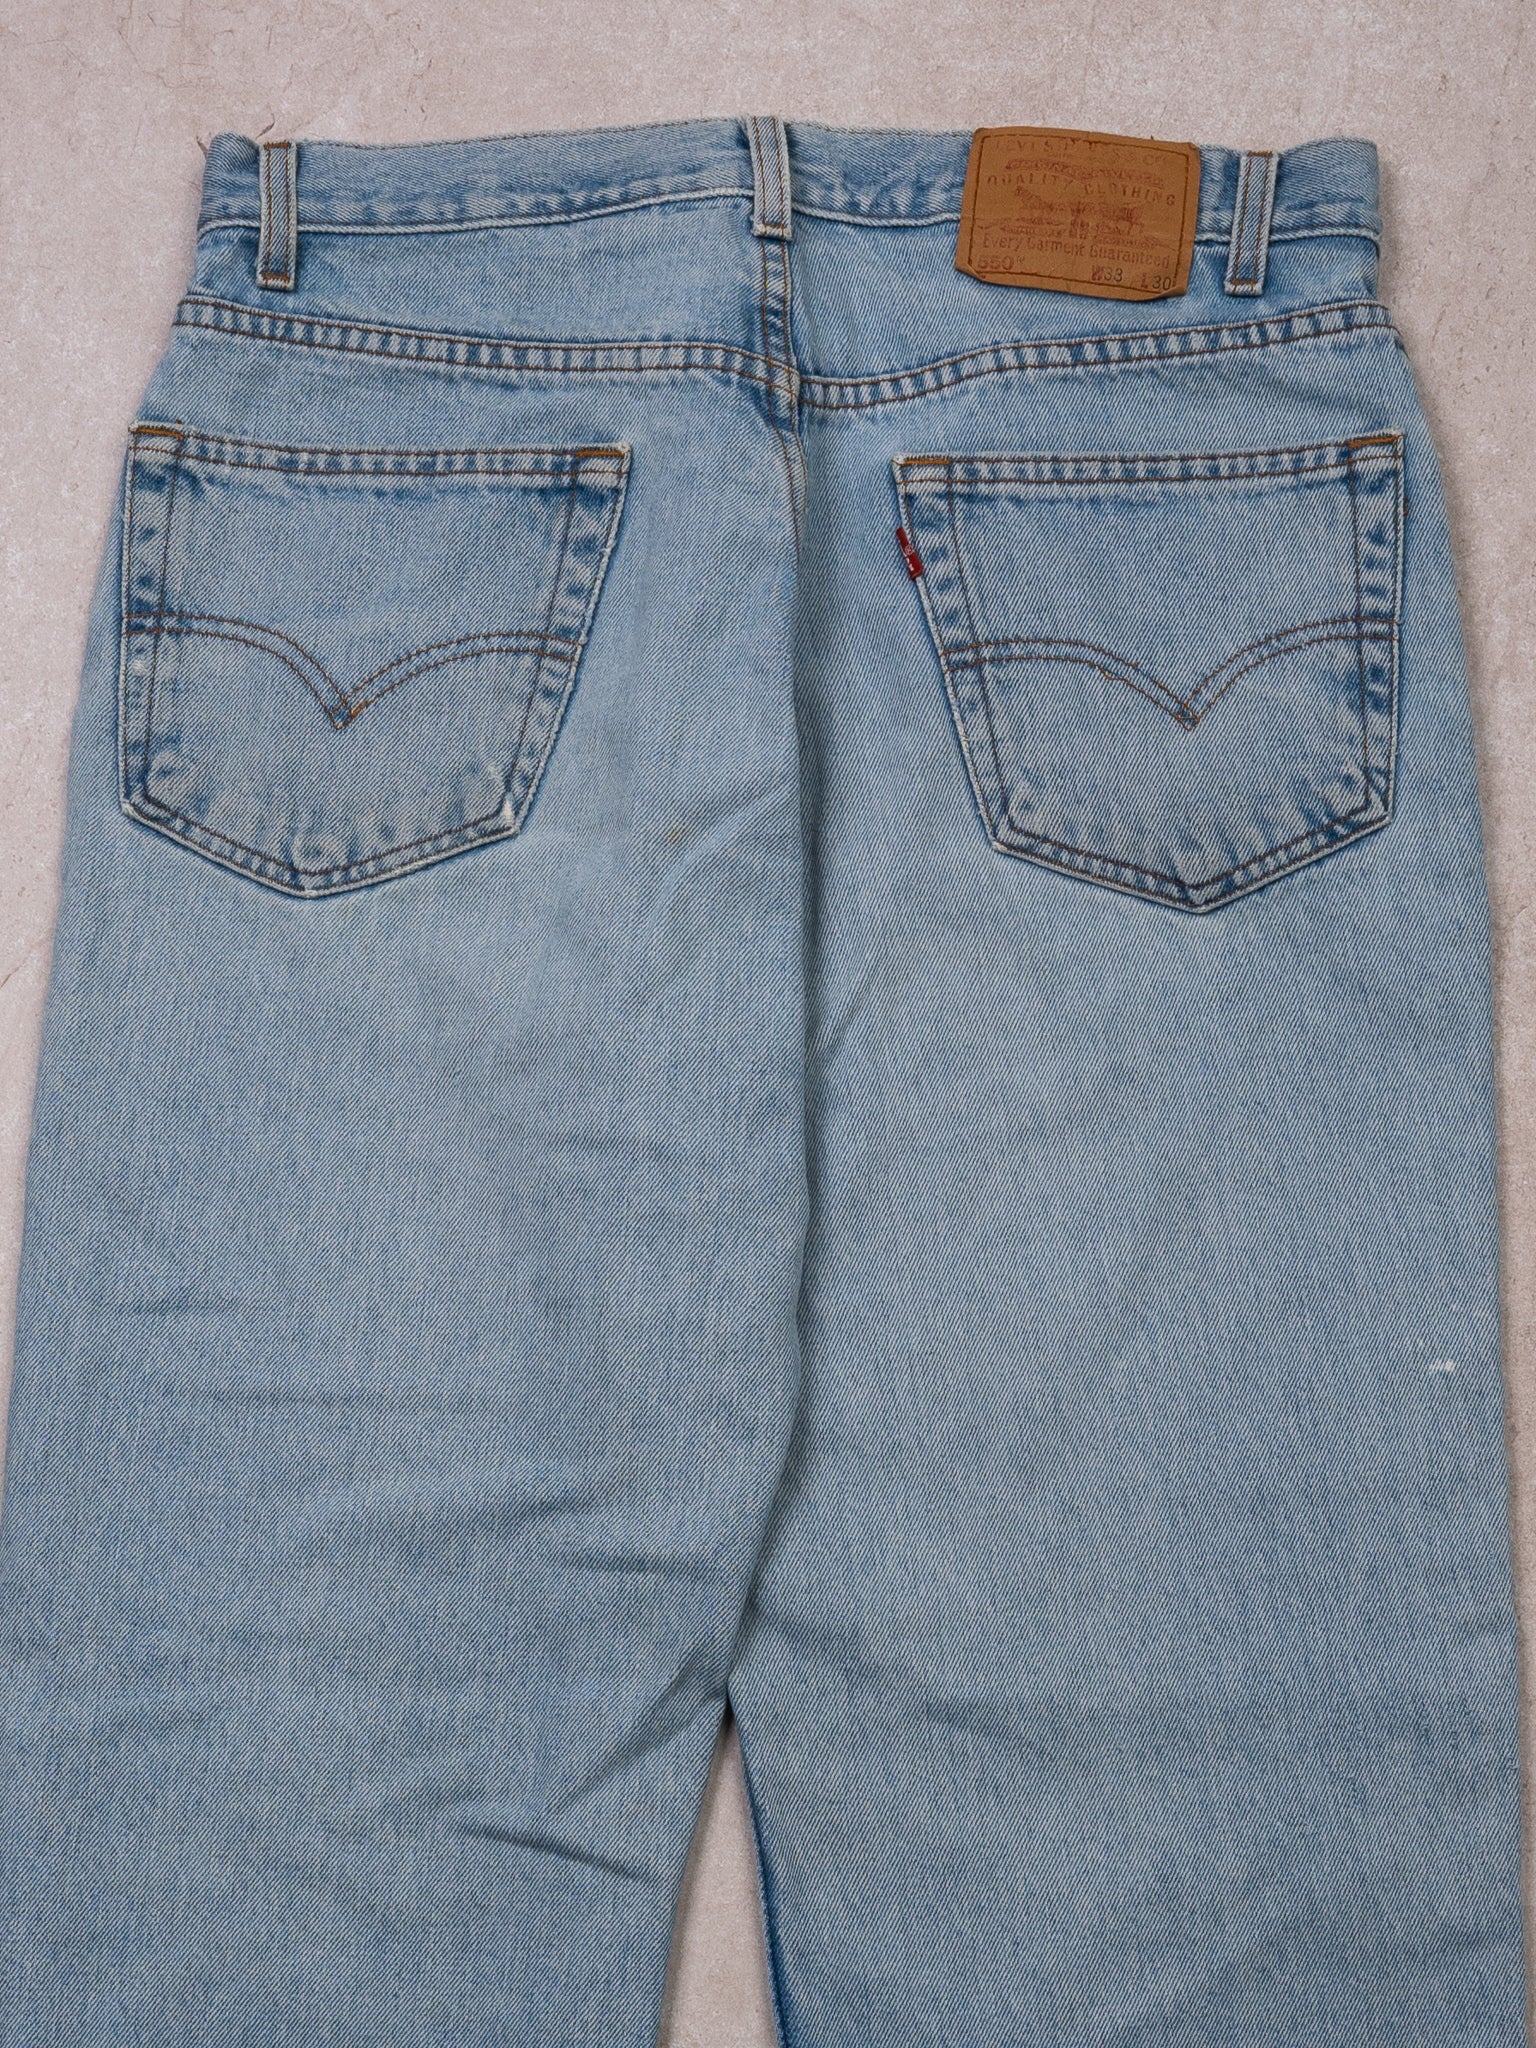 Vintage 90s Light Blue Relax Fit Levi 550 Jeans (32X30)